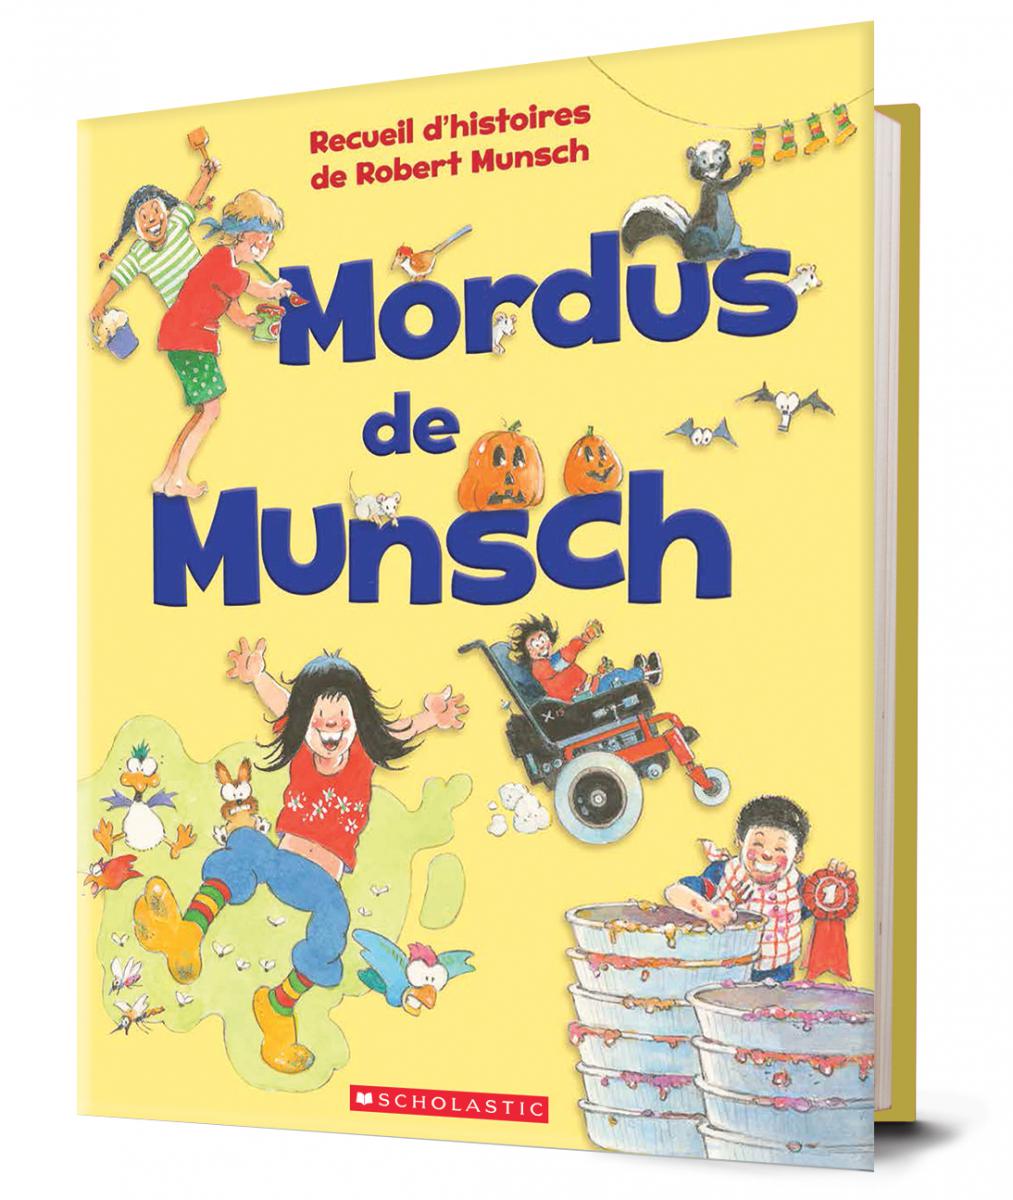  Mordus de Munsch 